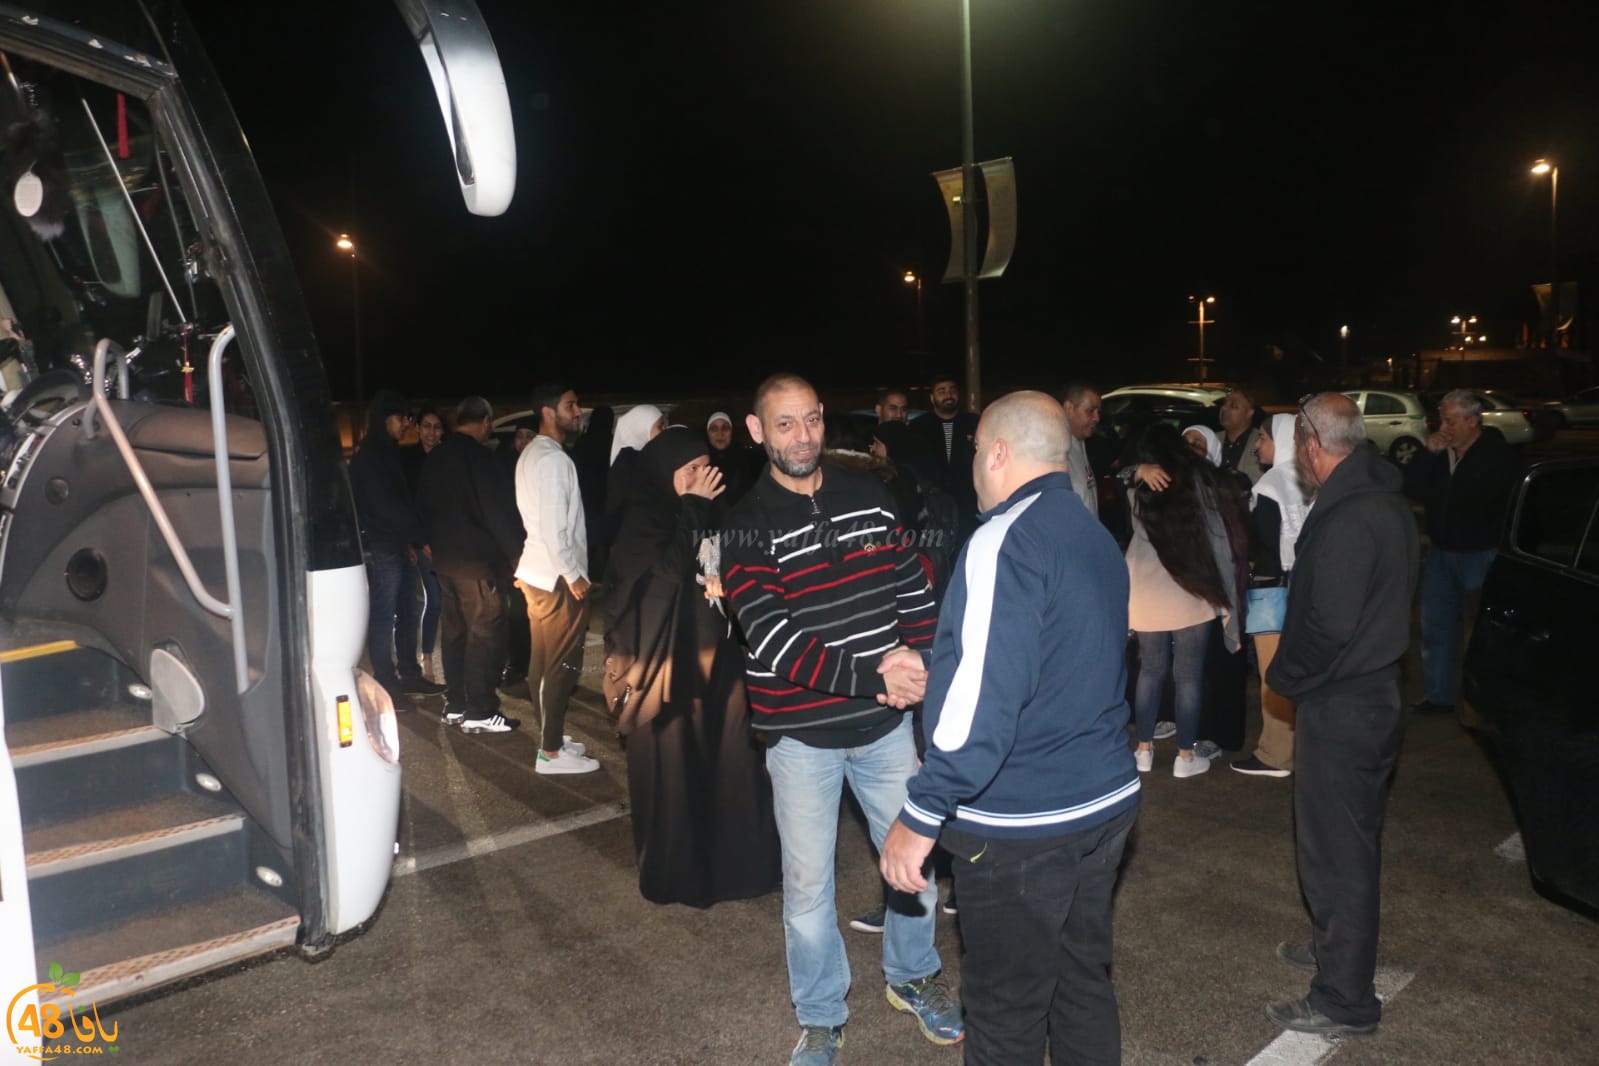  بالصور: فجر اليوم - انطلاق حافلة الفوج الثالث من معتمري مدينة يافا للديار الحجازية